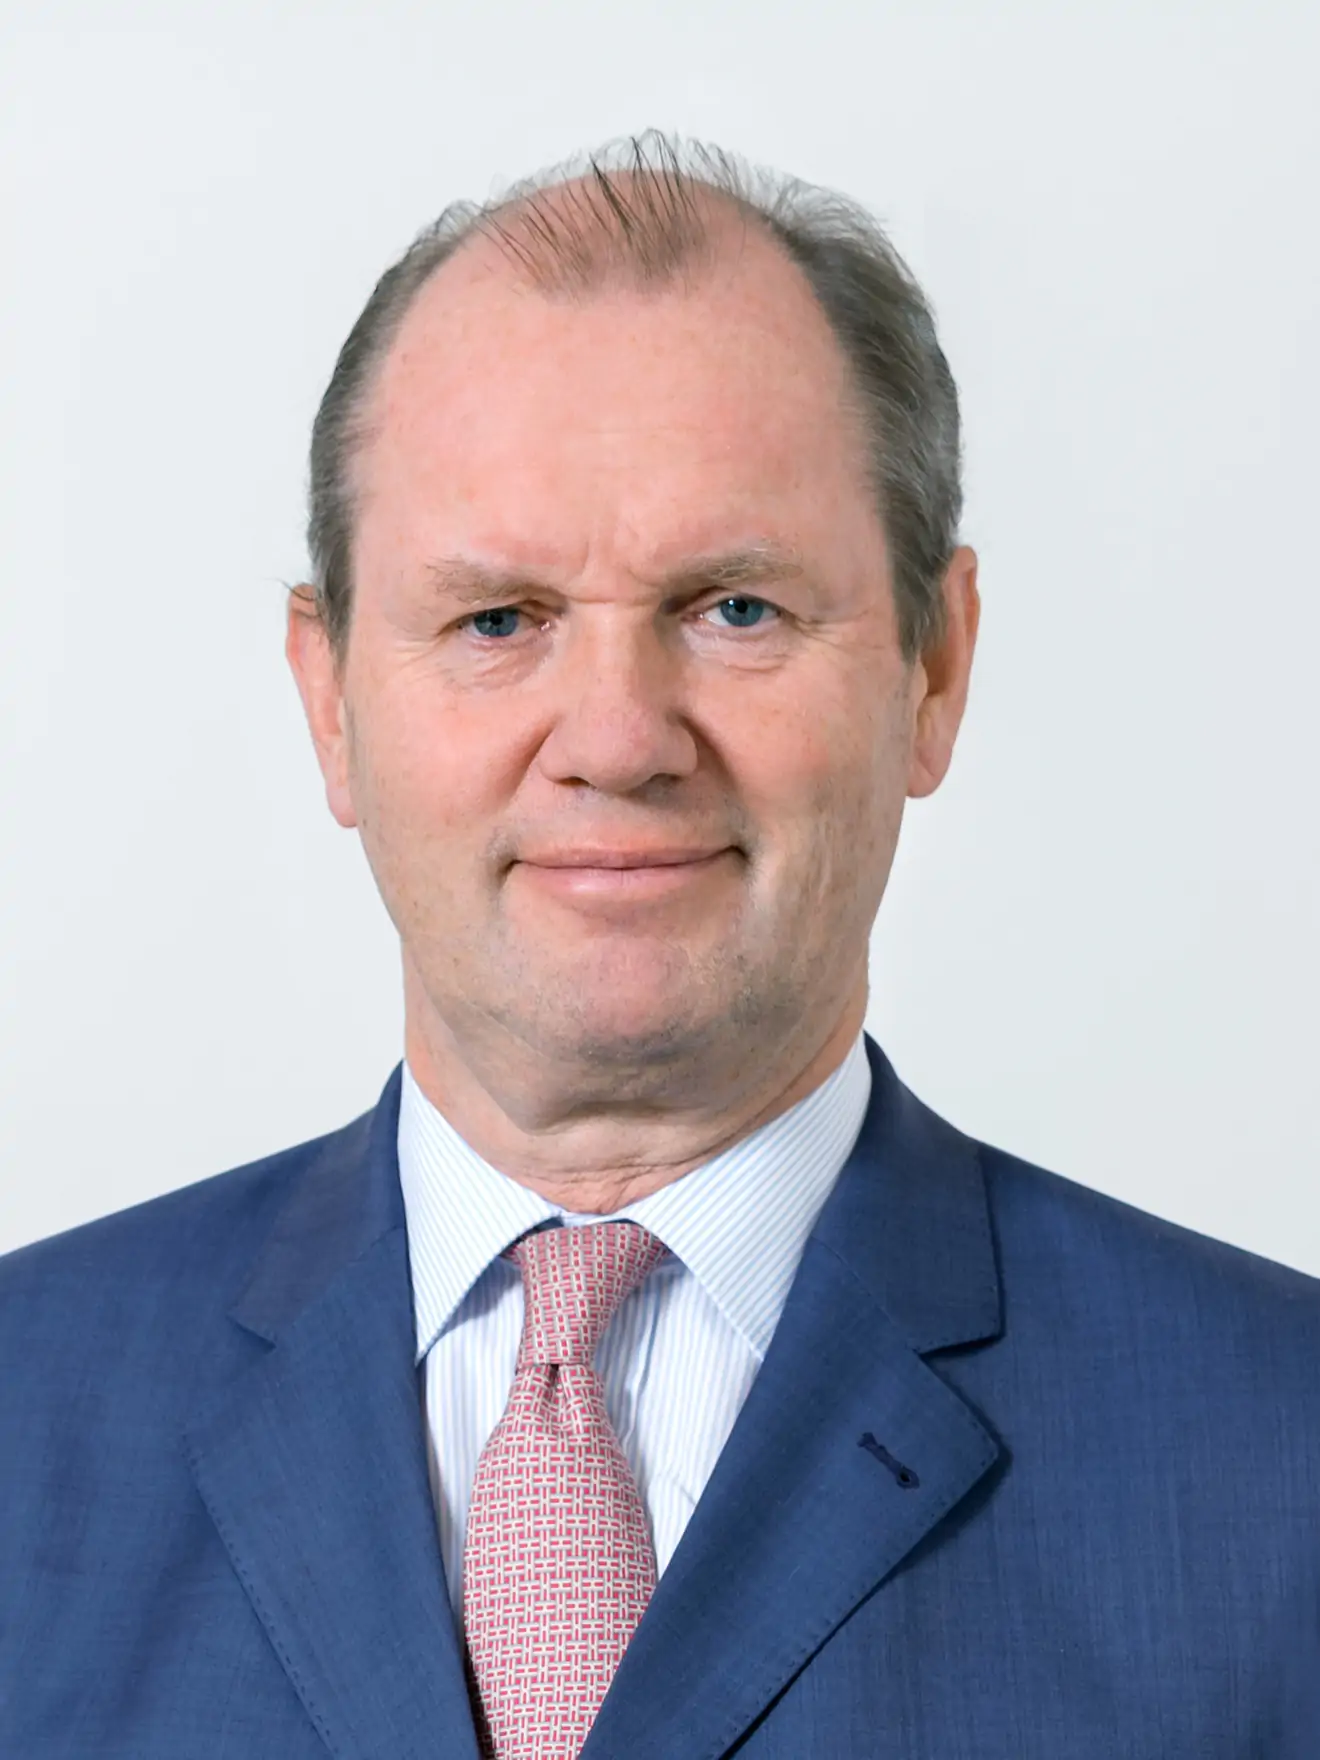 Juergen B. Steinemann, Board of Directors Member